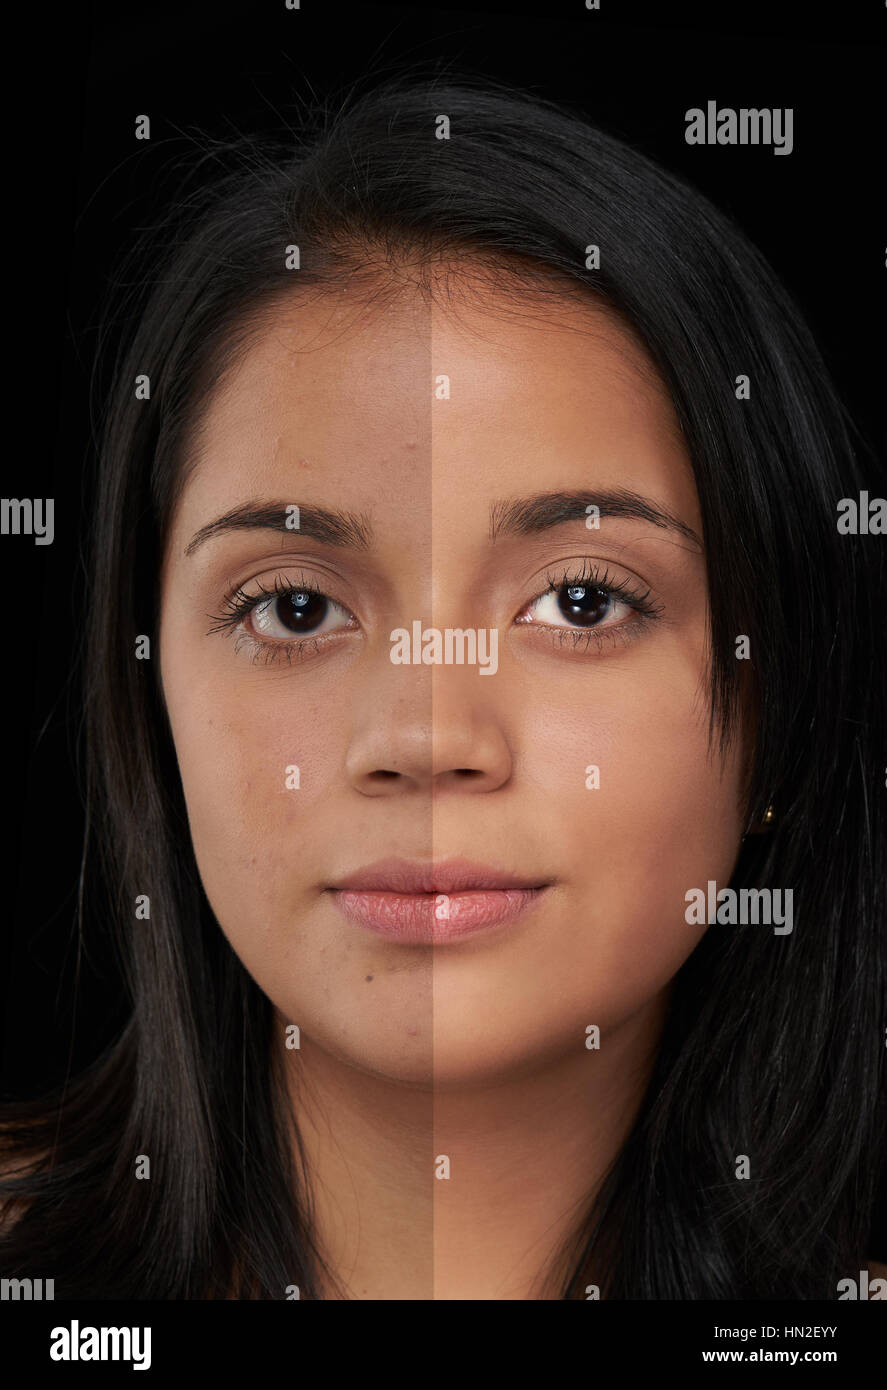 halb retuschierte Haut der Frau Gesicht isoliert auf schwarz Stockfoto